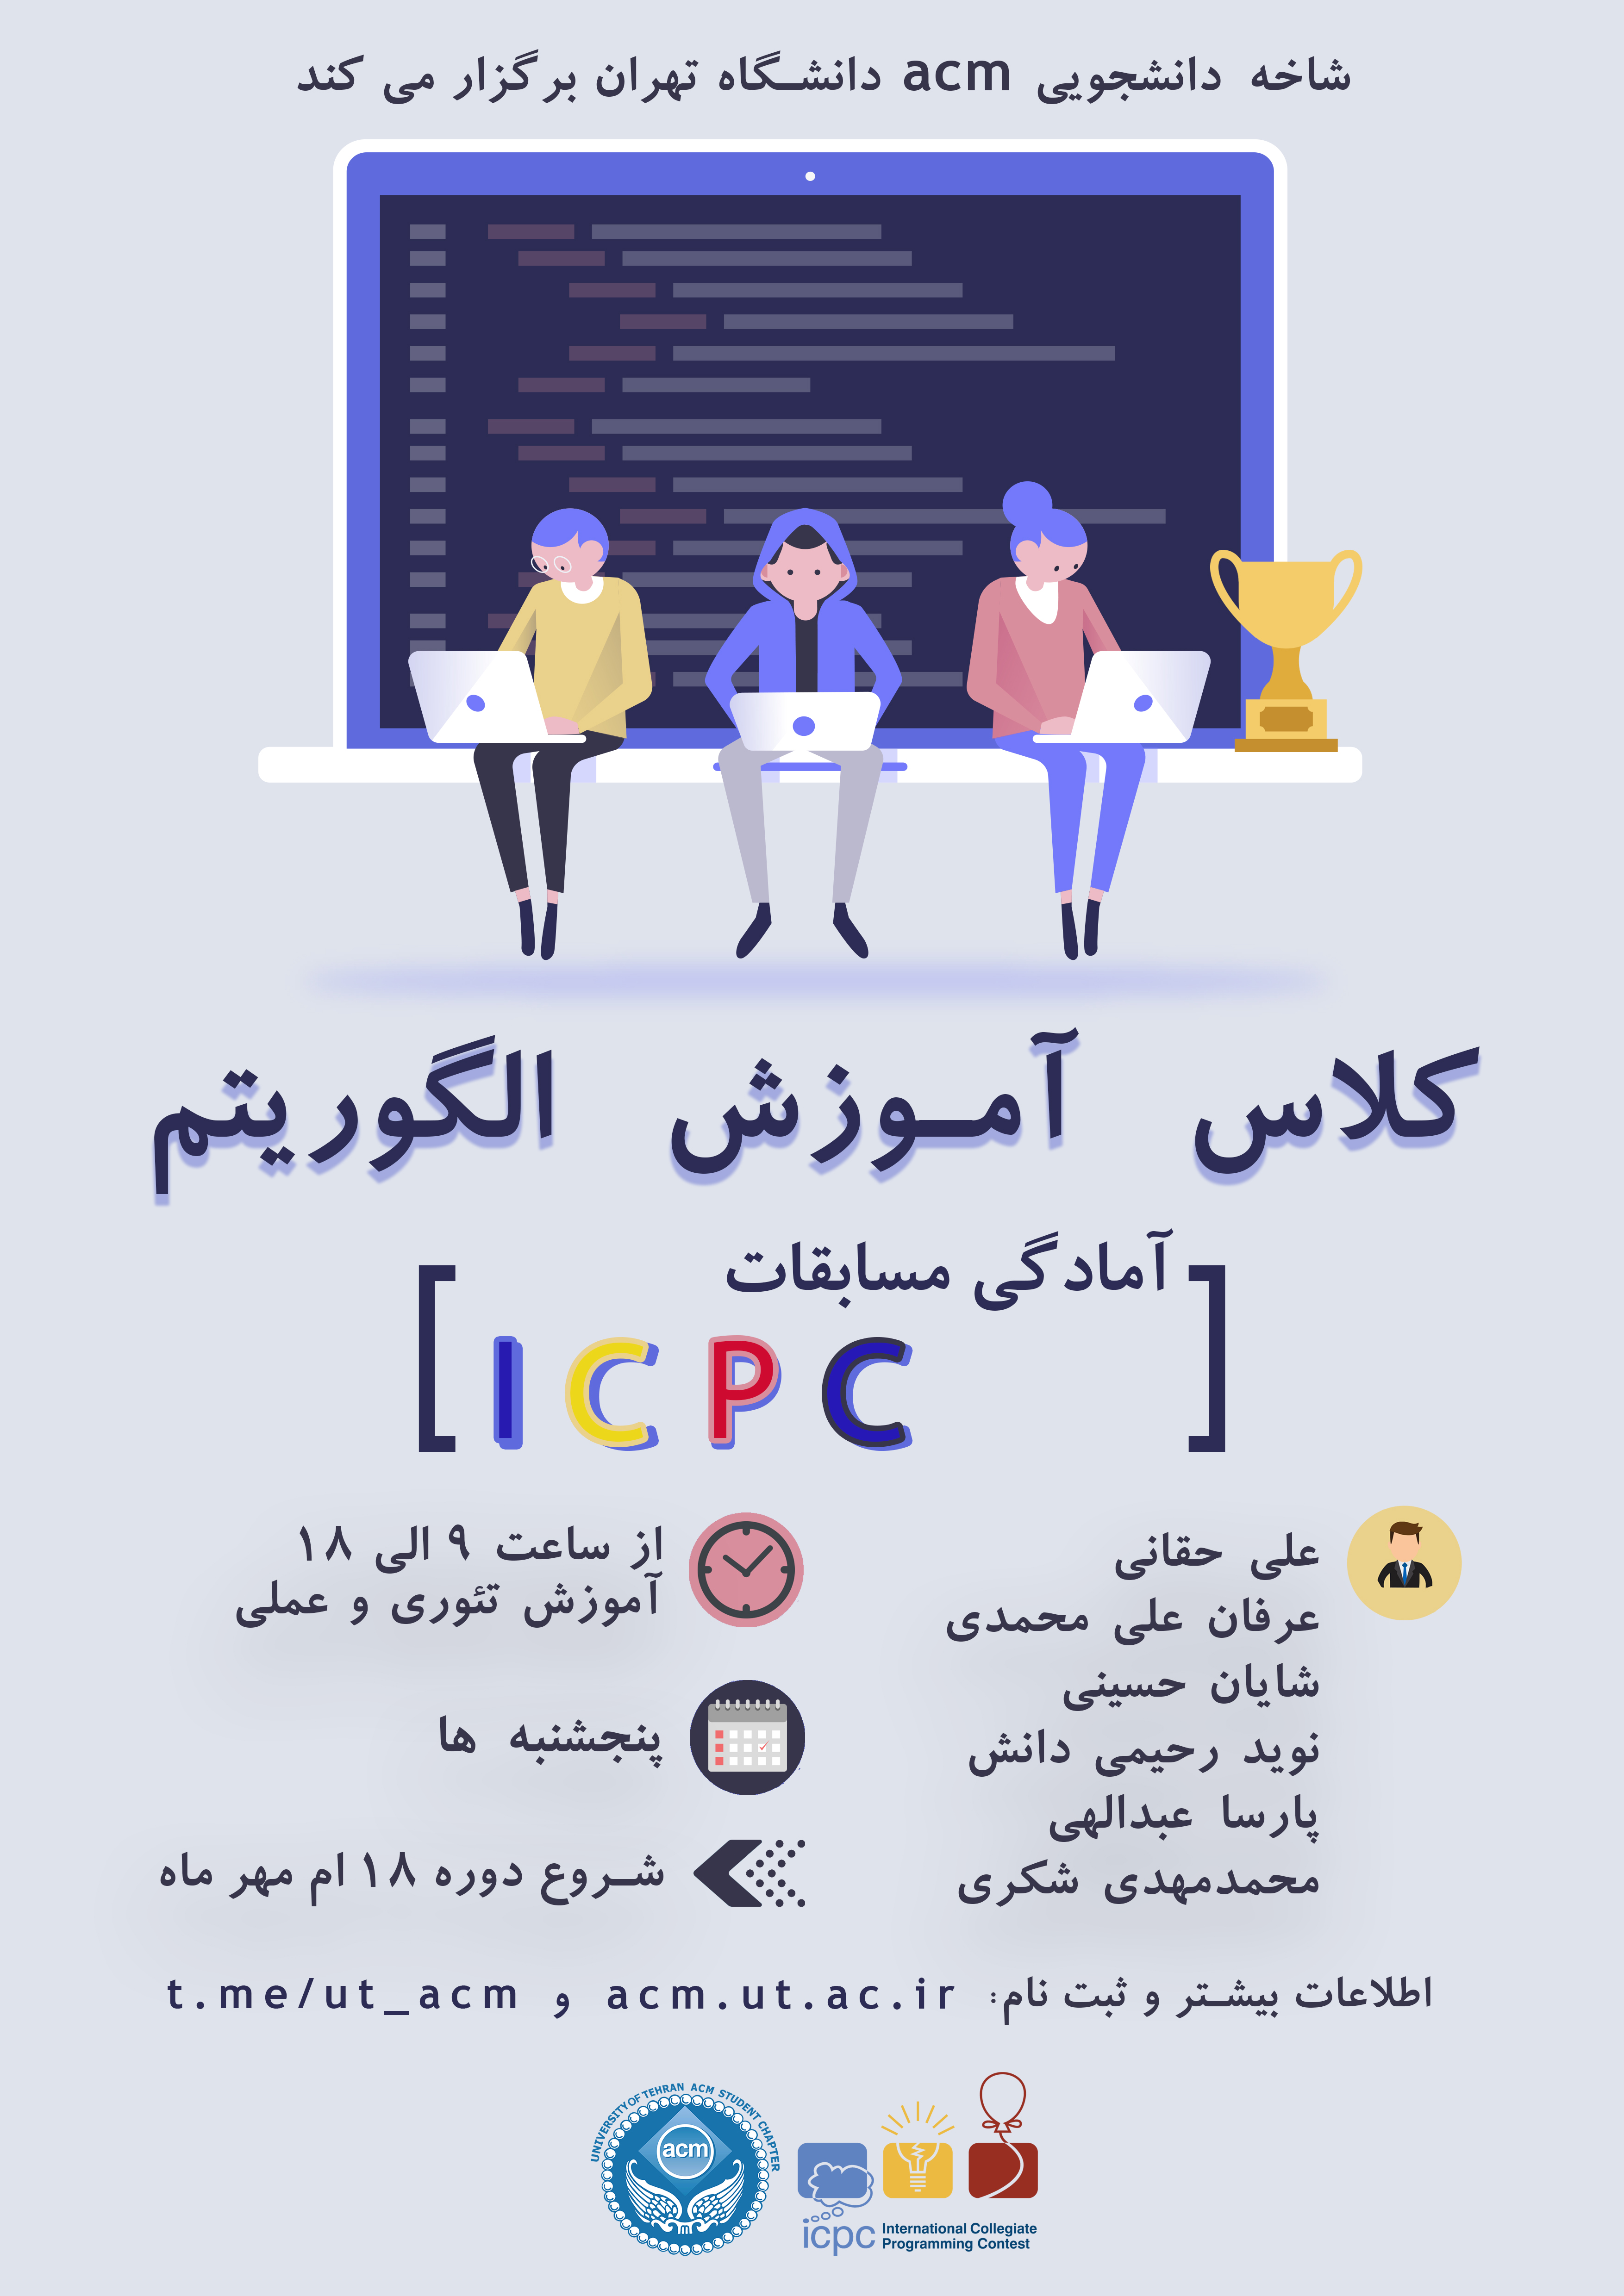 دوره آموزش الگوریتم آمادگی مسابقات ICPC